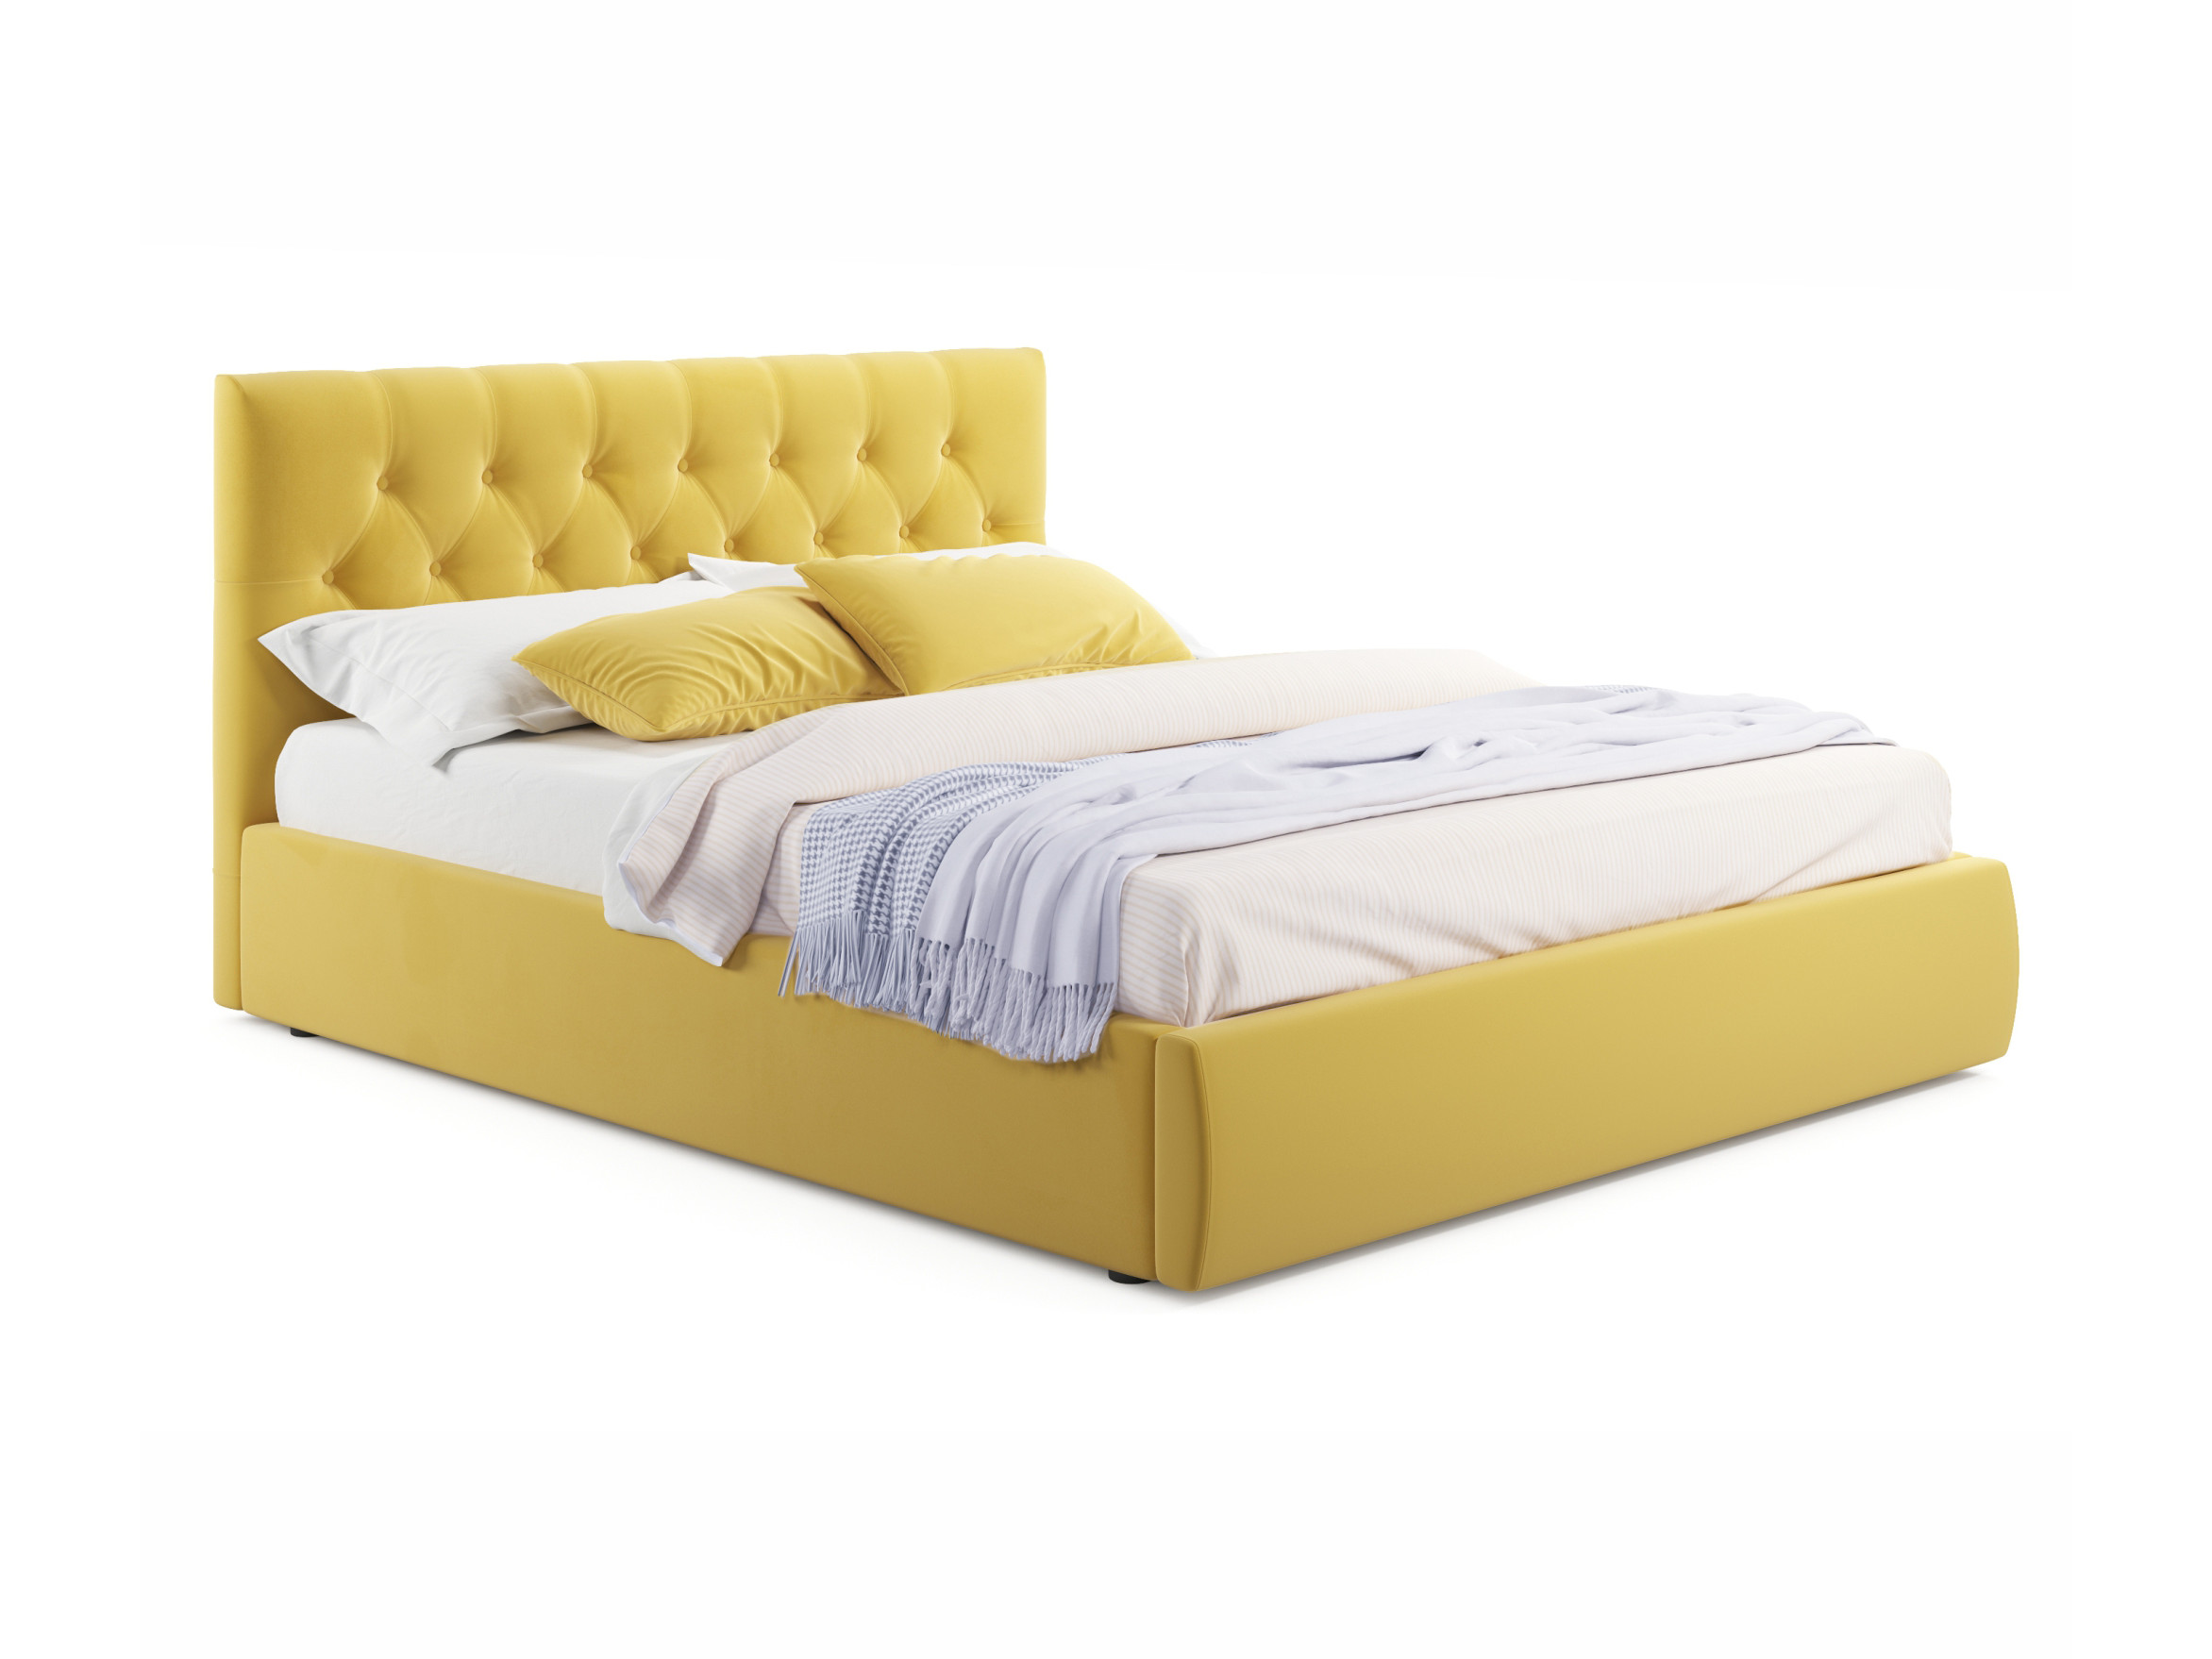 Мягкая кровать Verona 1600 желтая с ортопедическим основанием желтый, Желтый, Велюр, ДСП мягкая кровать monika 1600 синяя c ортопедическим основанием синий синий велюр дсп двп